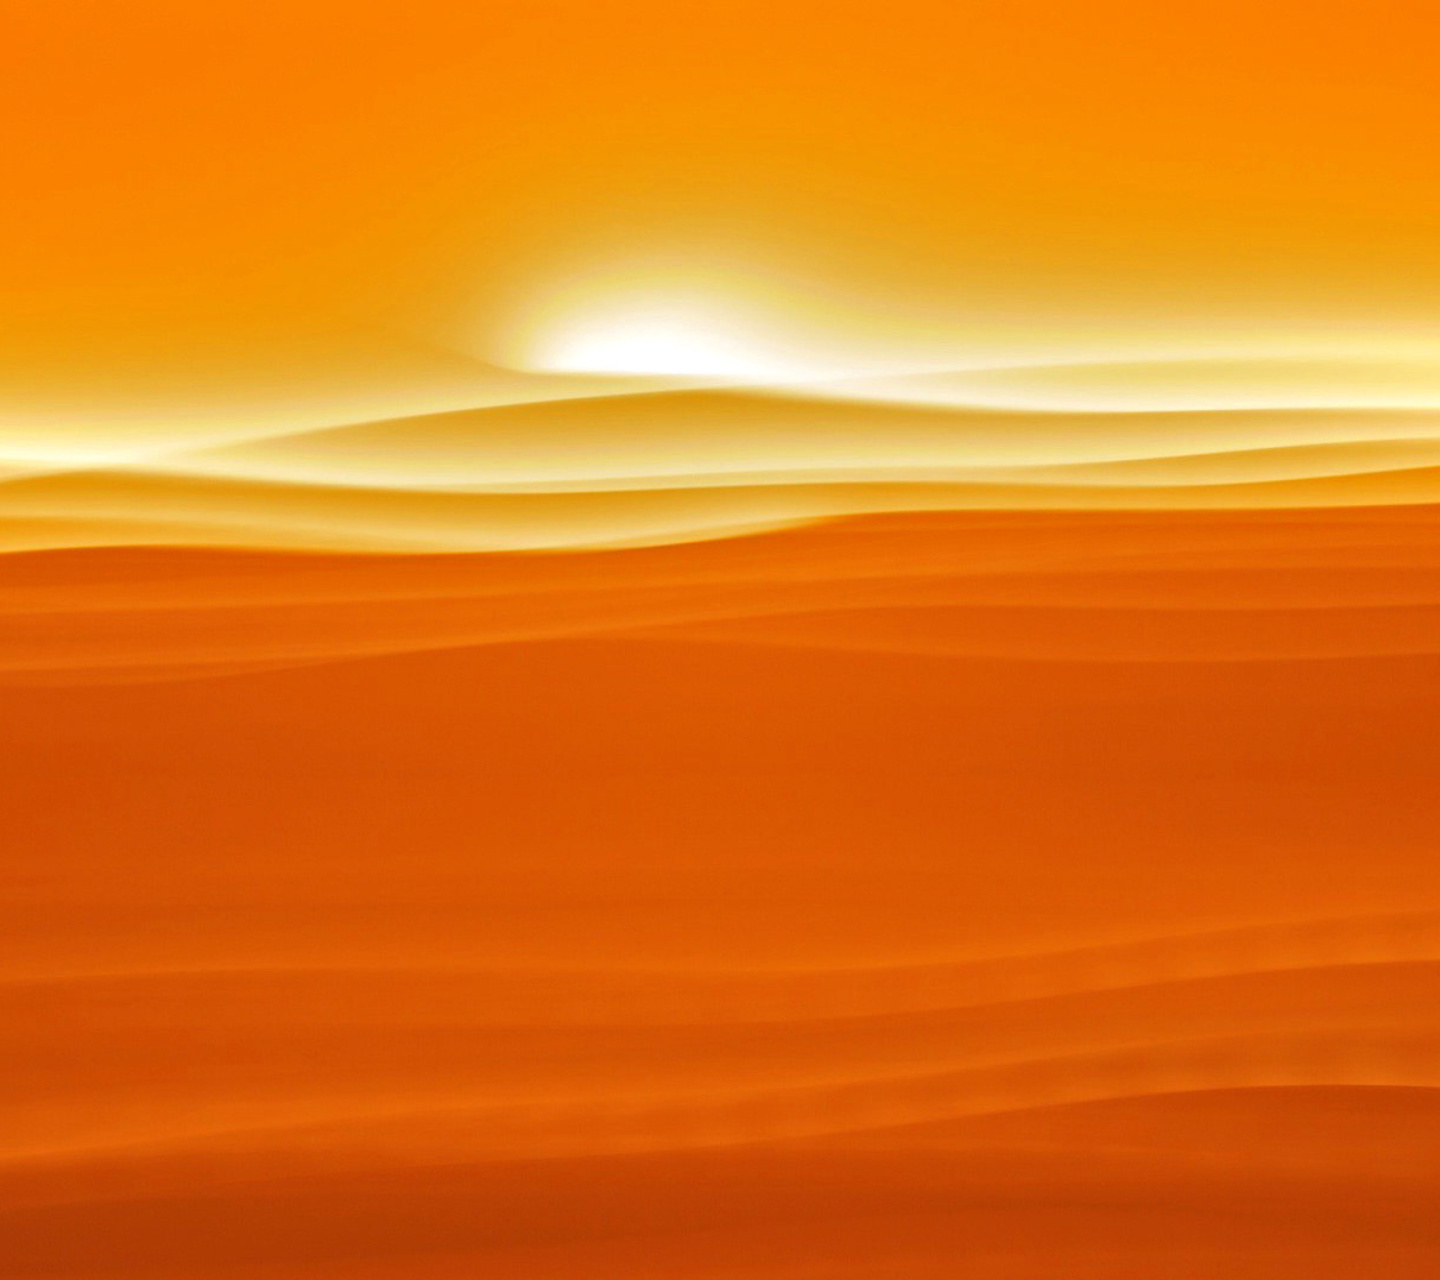 Обои Orange Sky and Desert 1440x1280